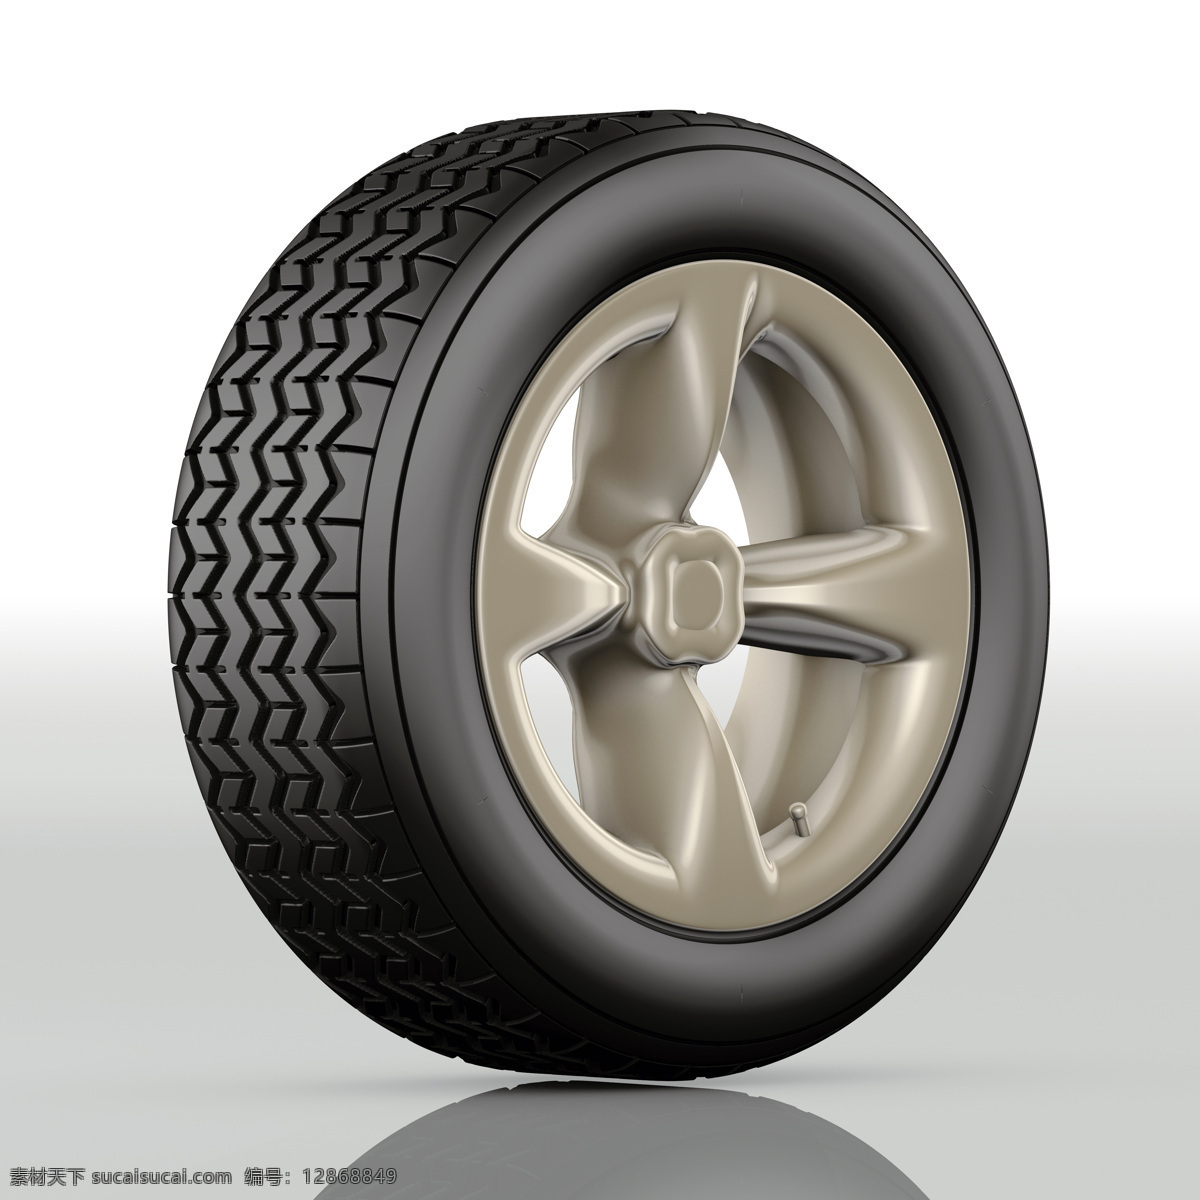 汽车轮胎 模型 汽车 车轮 汽配 外胎 橡胶 纹理 花纹 特写 3d模型 高清图片 汽车图片 现代科技